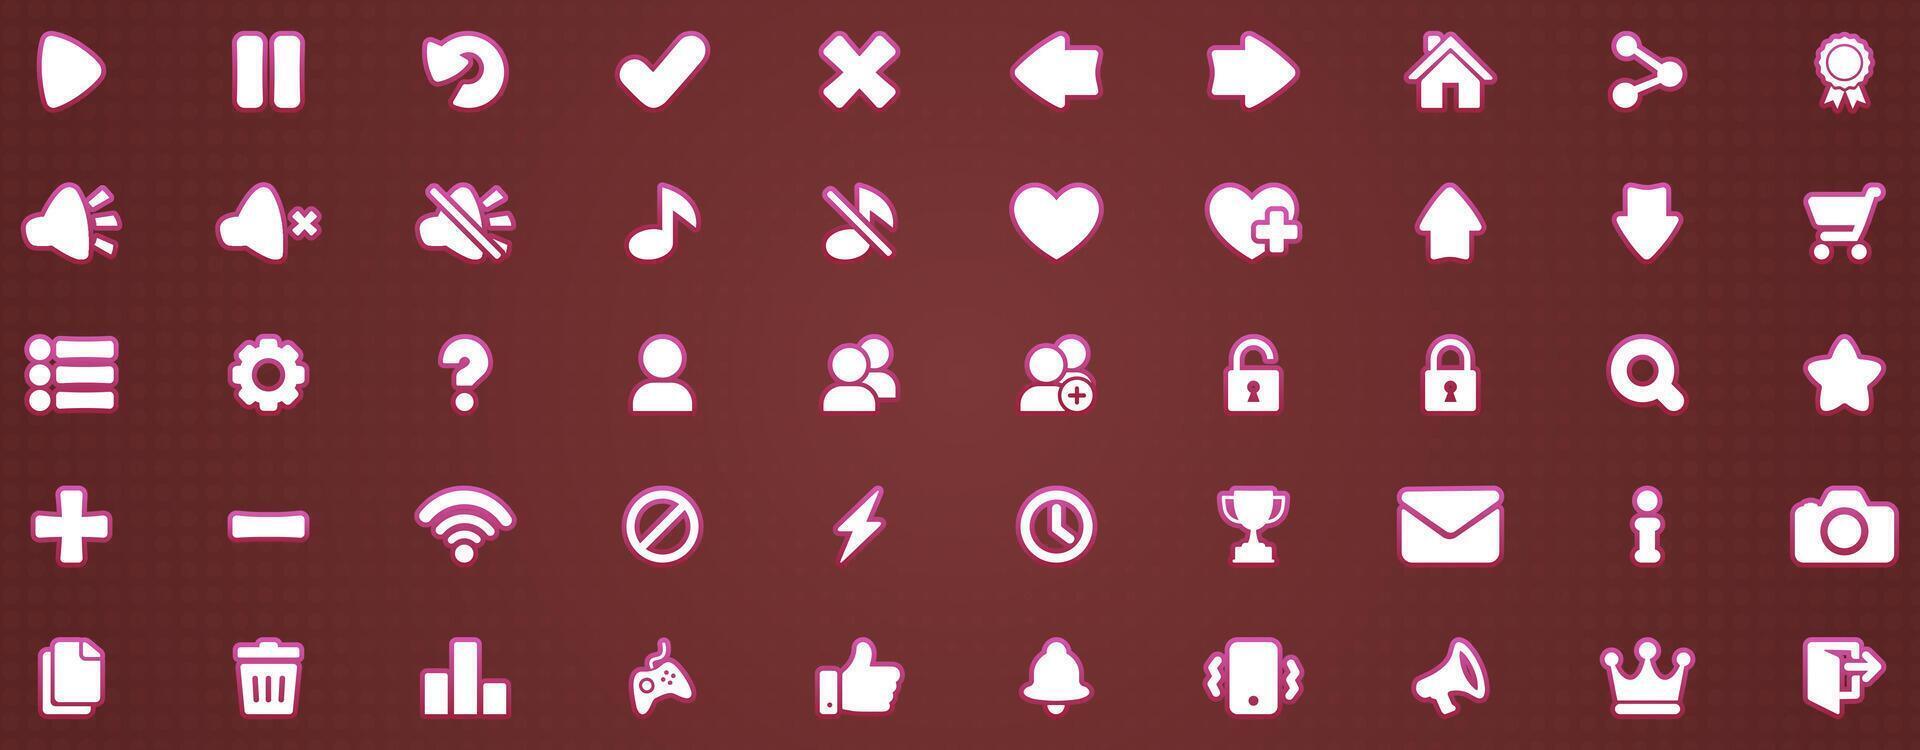 50 rosa ikoner vektor uppsättning spela inställningar paus annullera meny Försök igen ljud musik affär Nästa tillbaka leader hjärta ner låsa upp bricka post underrättelse stänga utgång för byggnad 2d spel på mobil och webb.